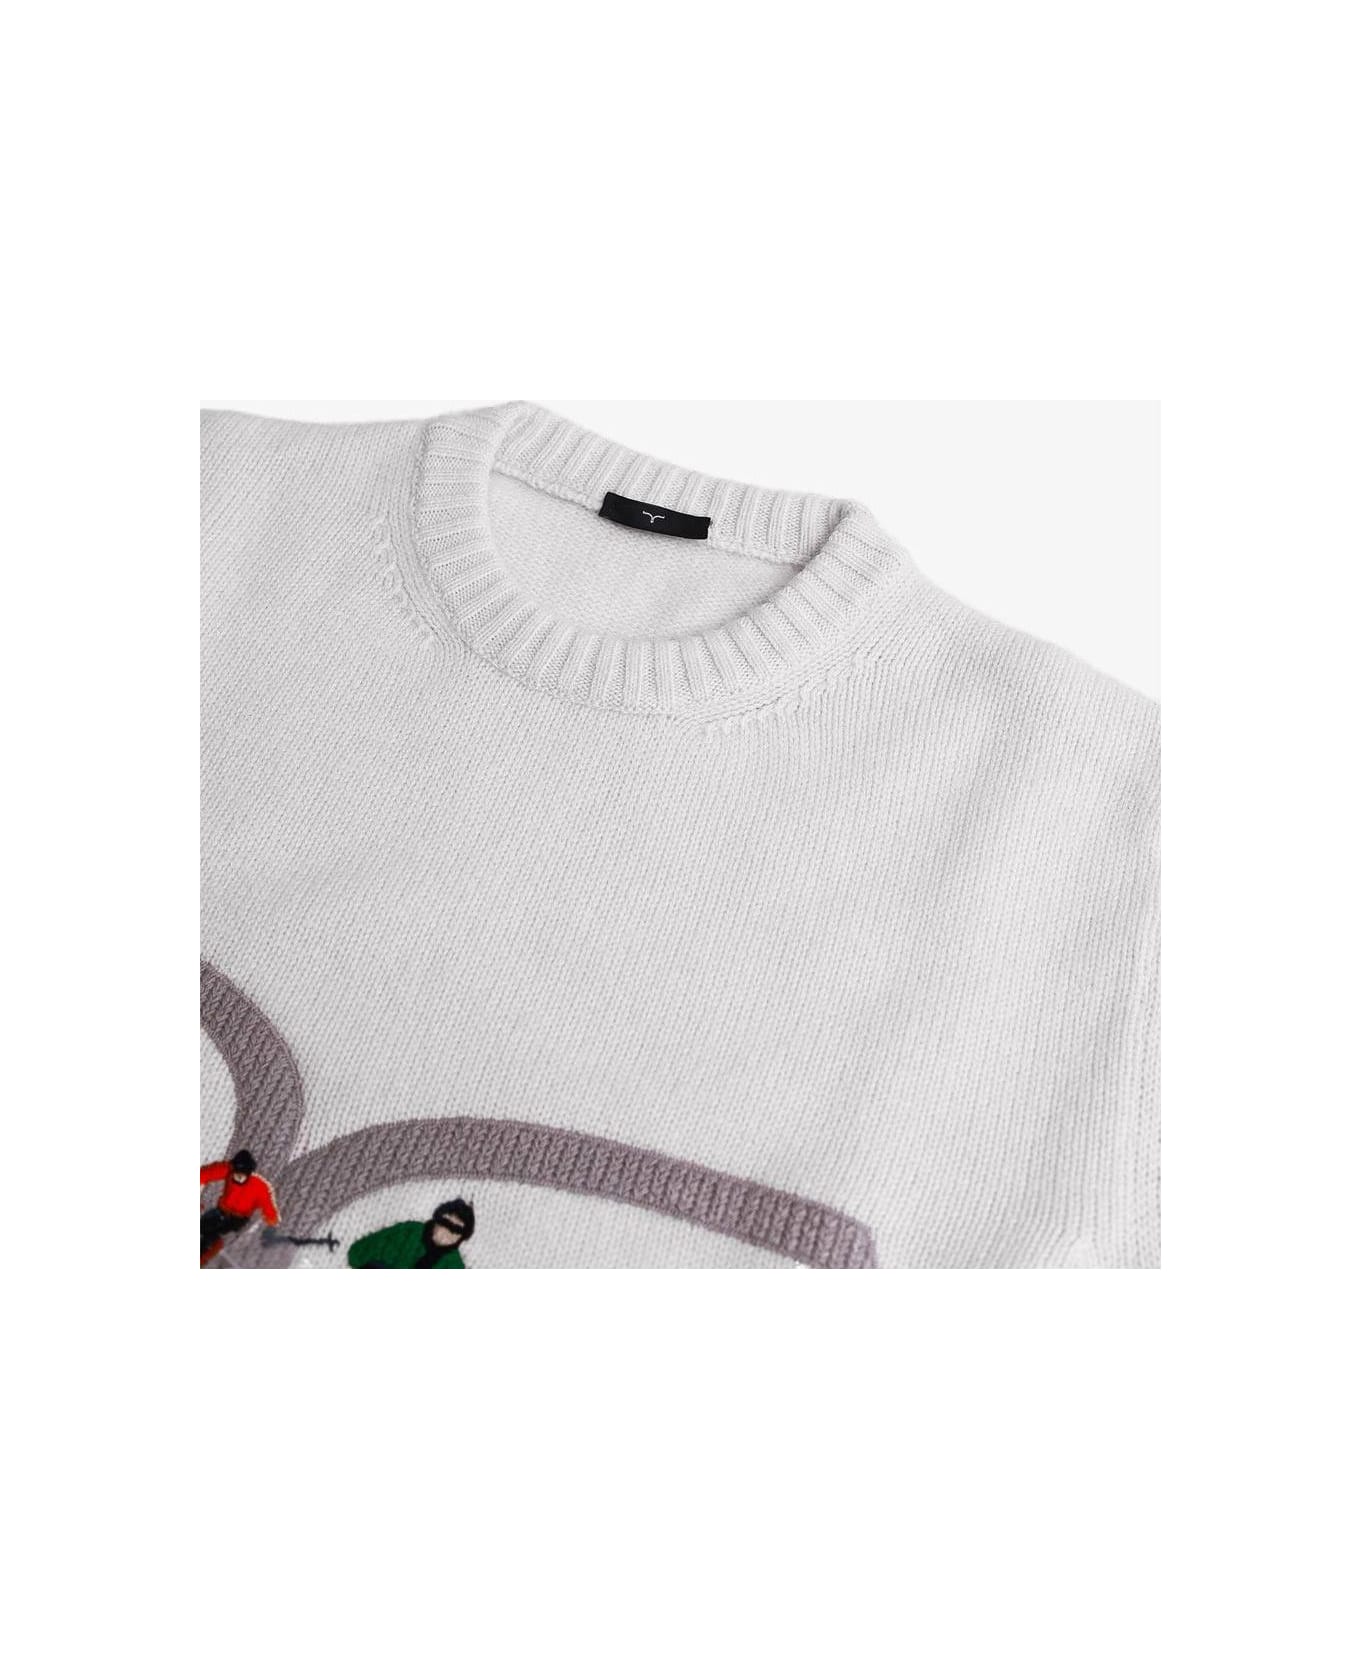 Larusmiani Sweater Ski Collection Sweater - Ivory ニットウェア